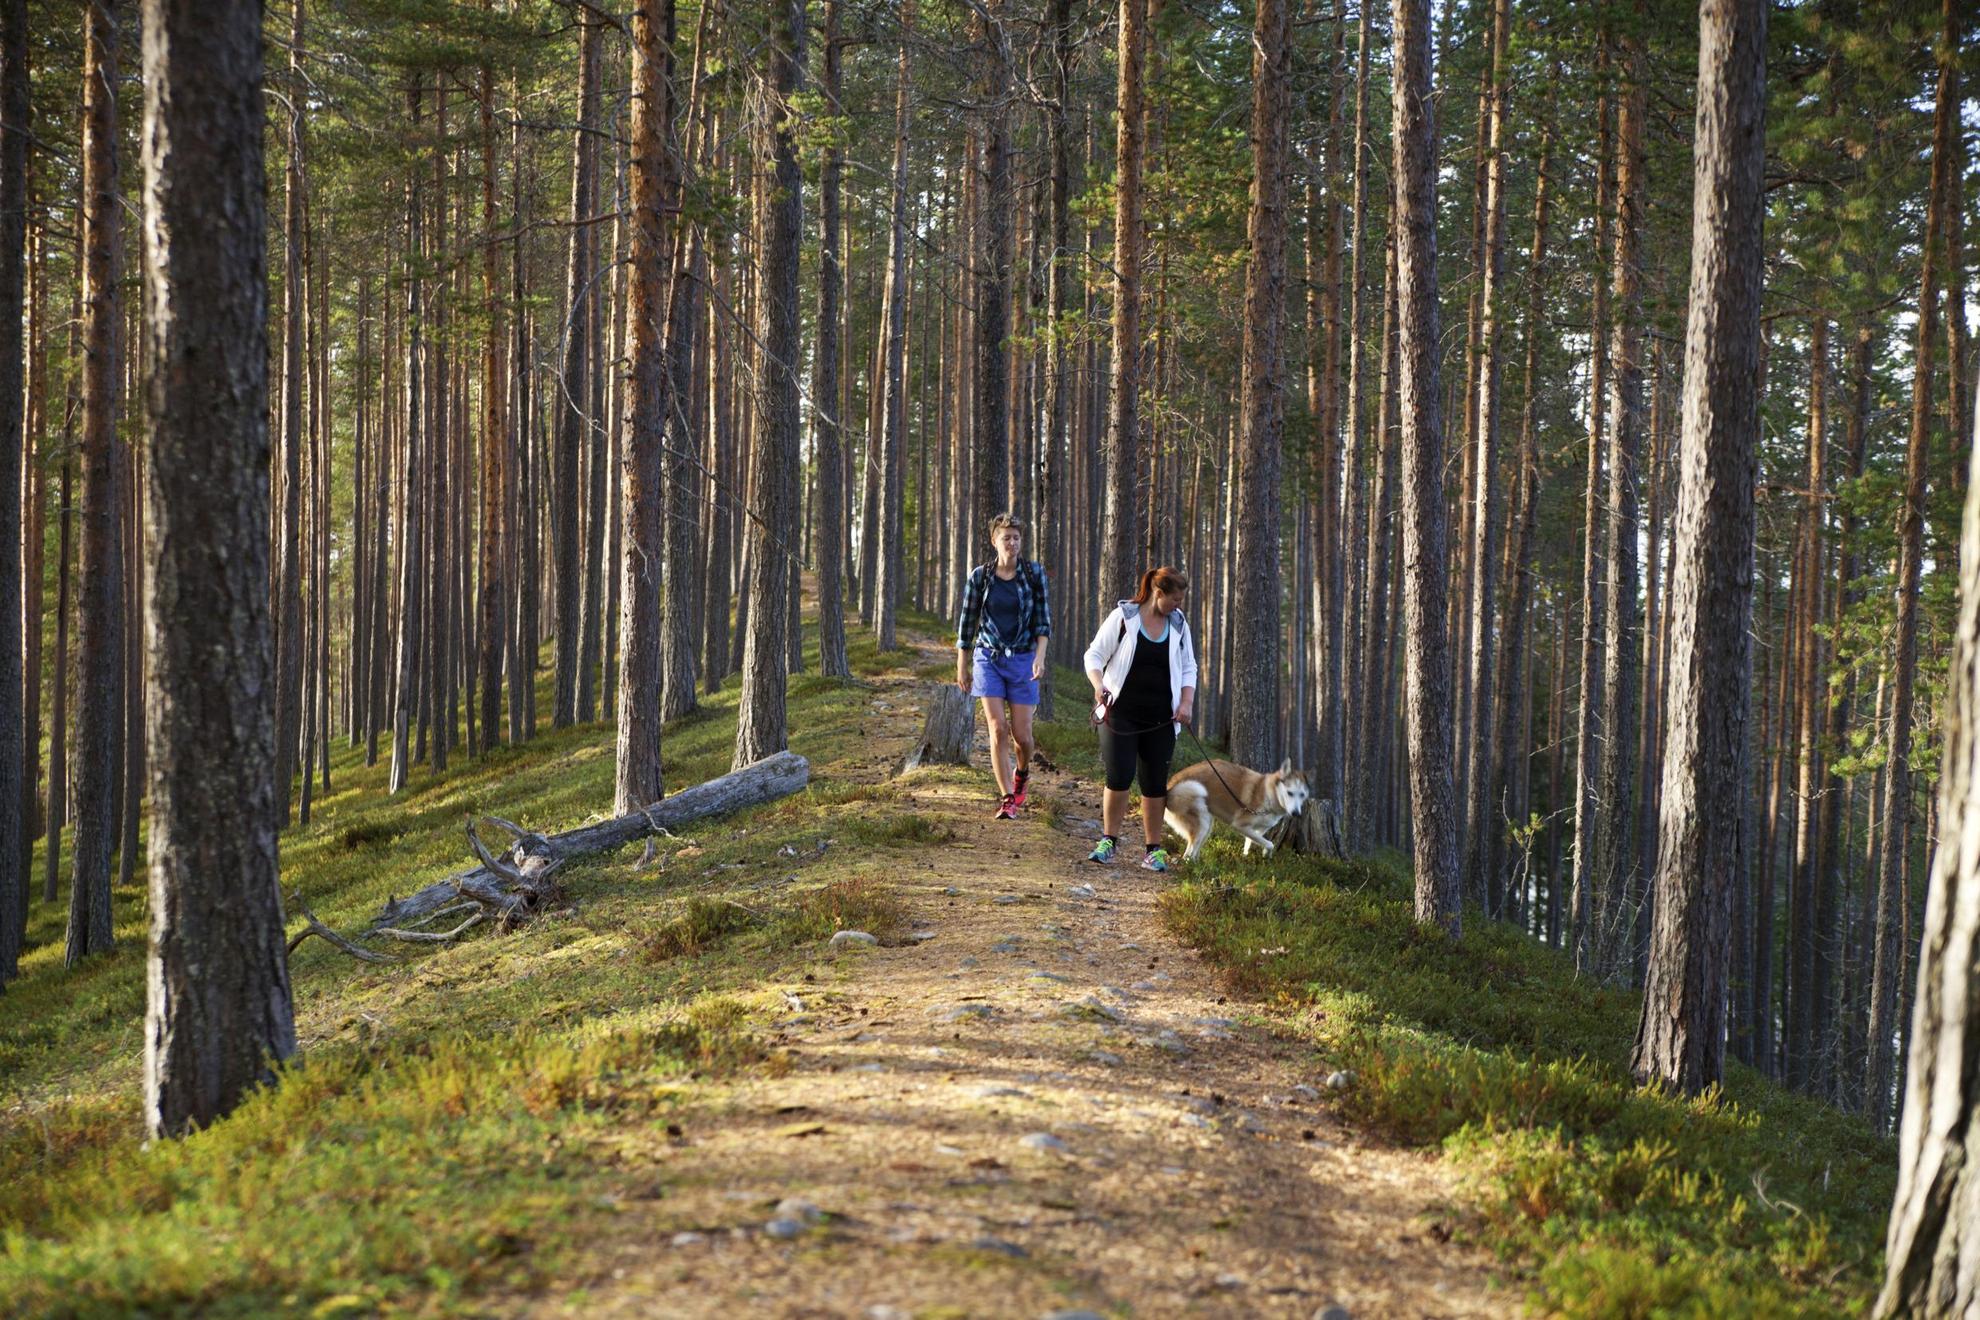 Deux personnes avec un chien en laisse marchent sur un chemin de randonnée dans une forêt.